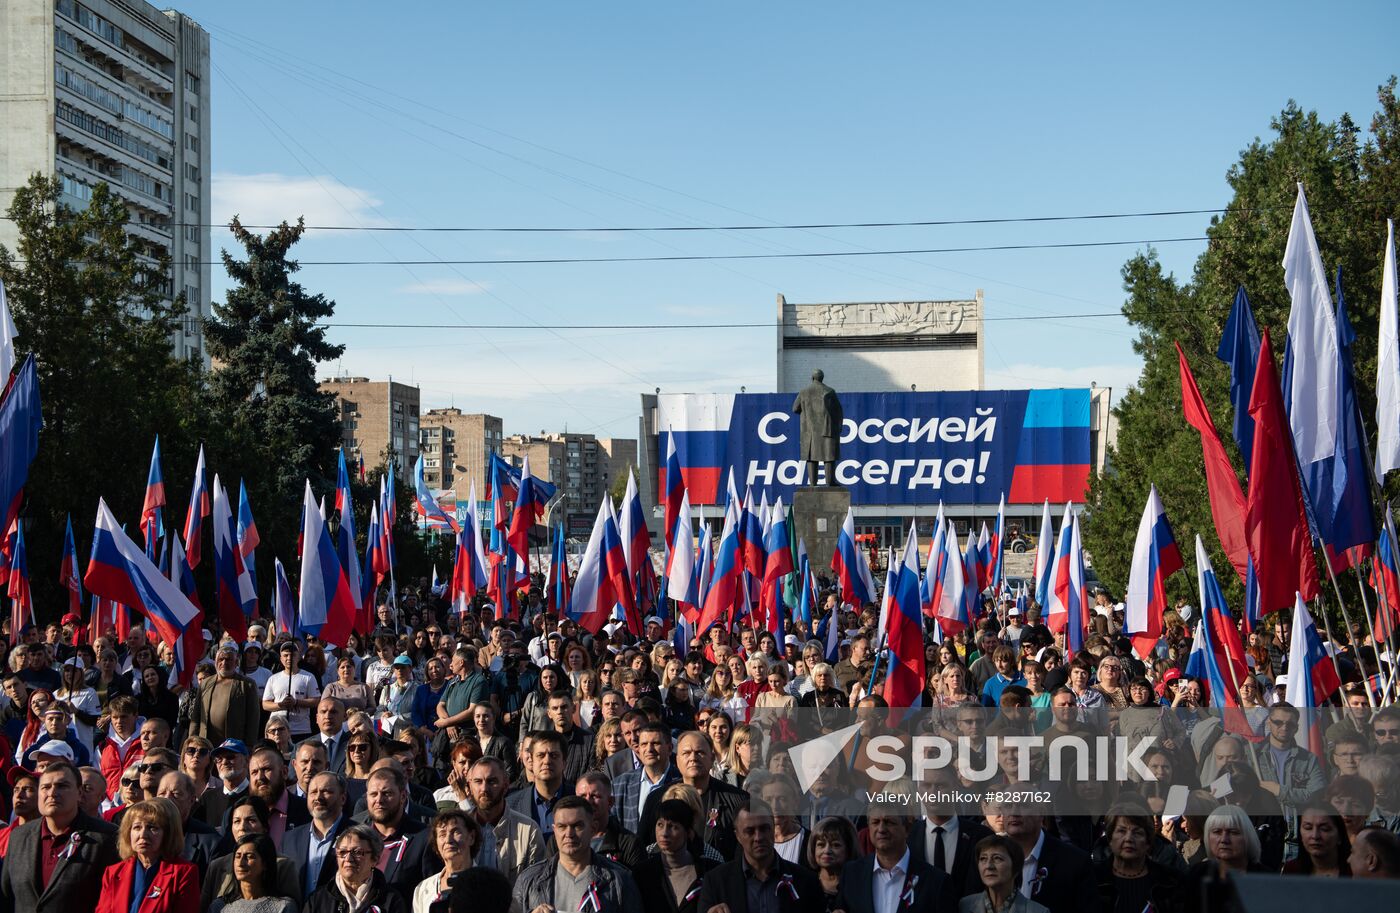 DPR LPR Russia Accession Celebrations